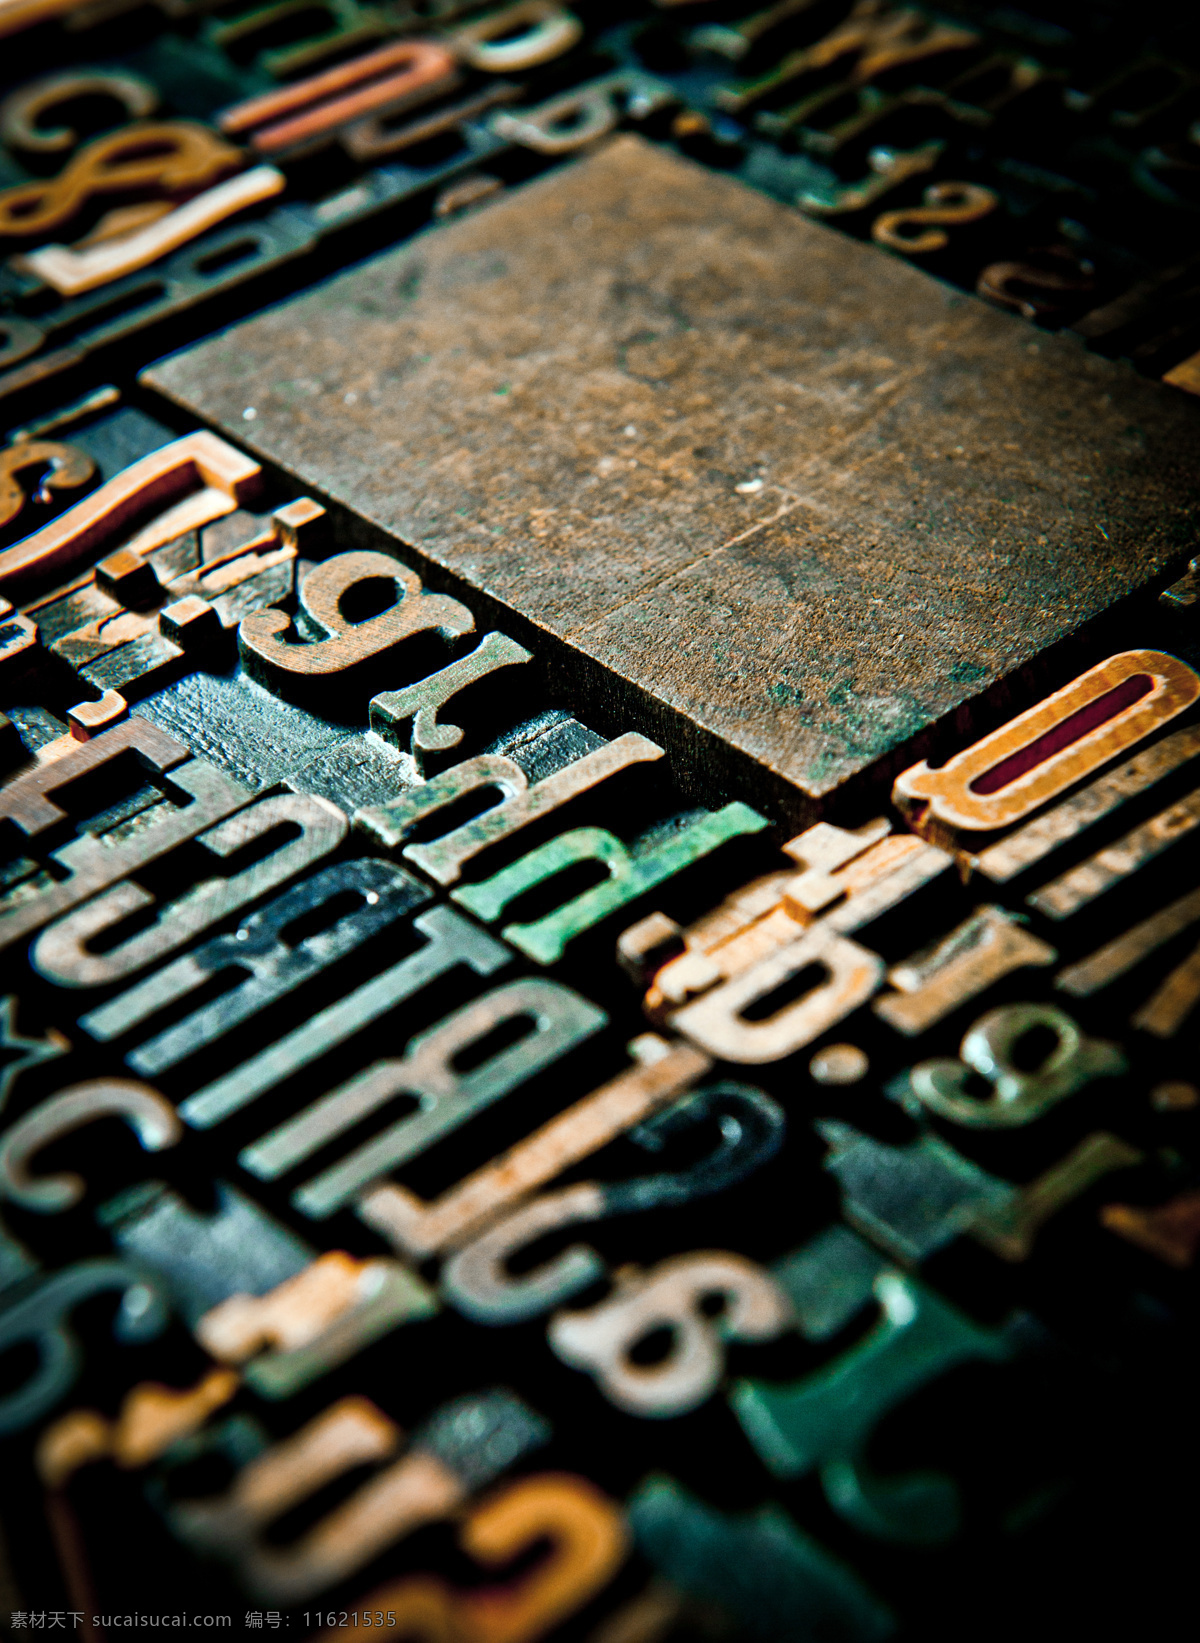 彩色 金属 立体 字母 方块 立体图案 其他类别 现代科技